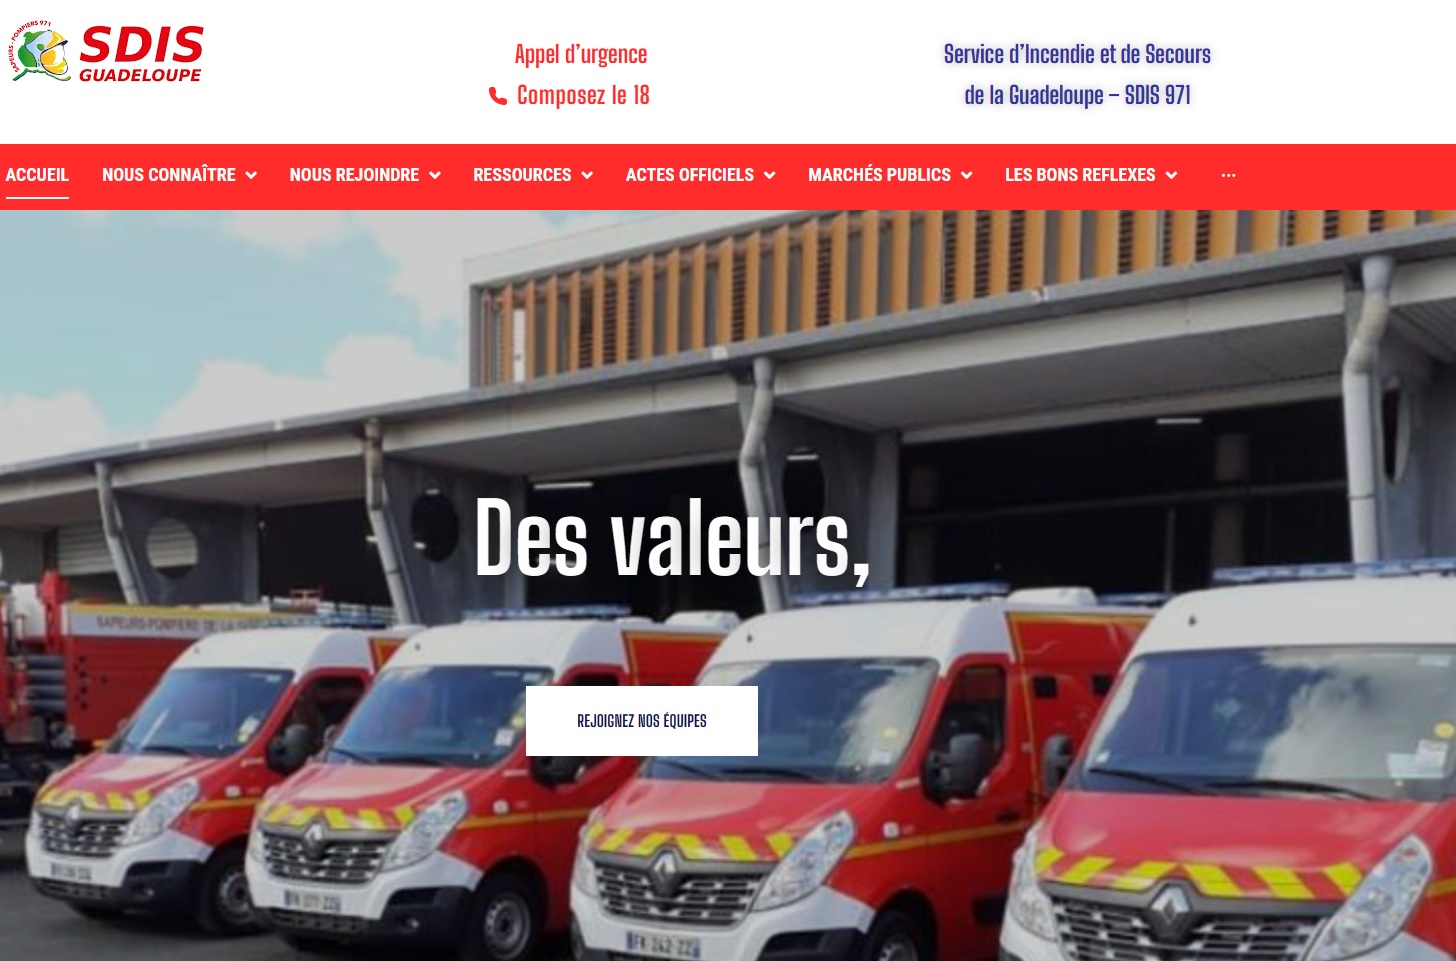     Le SDIS de Guadeloupe lance son nouveau site internet 

